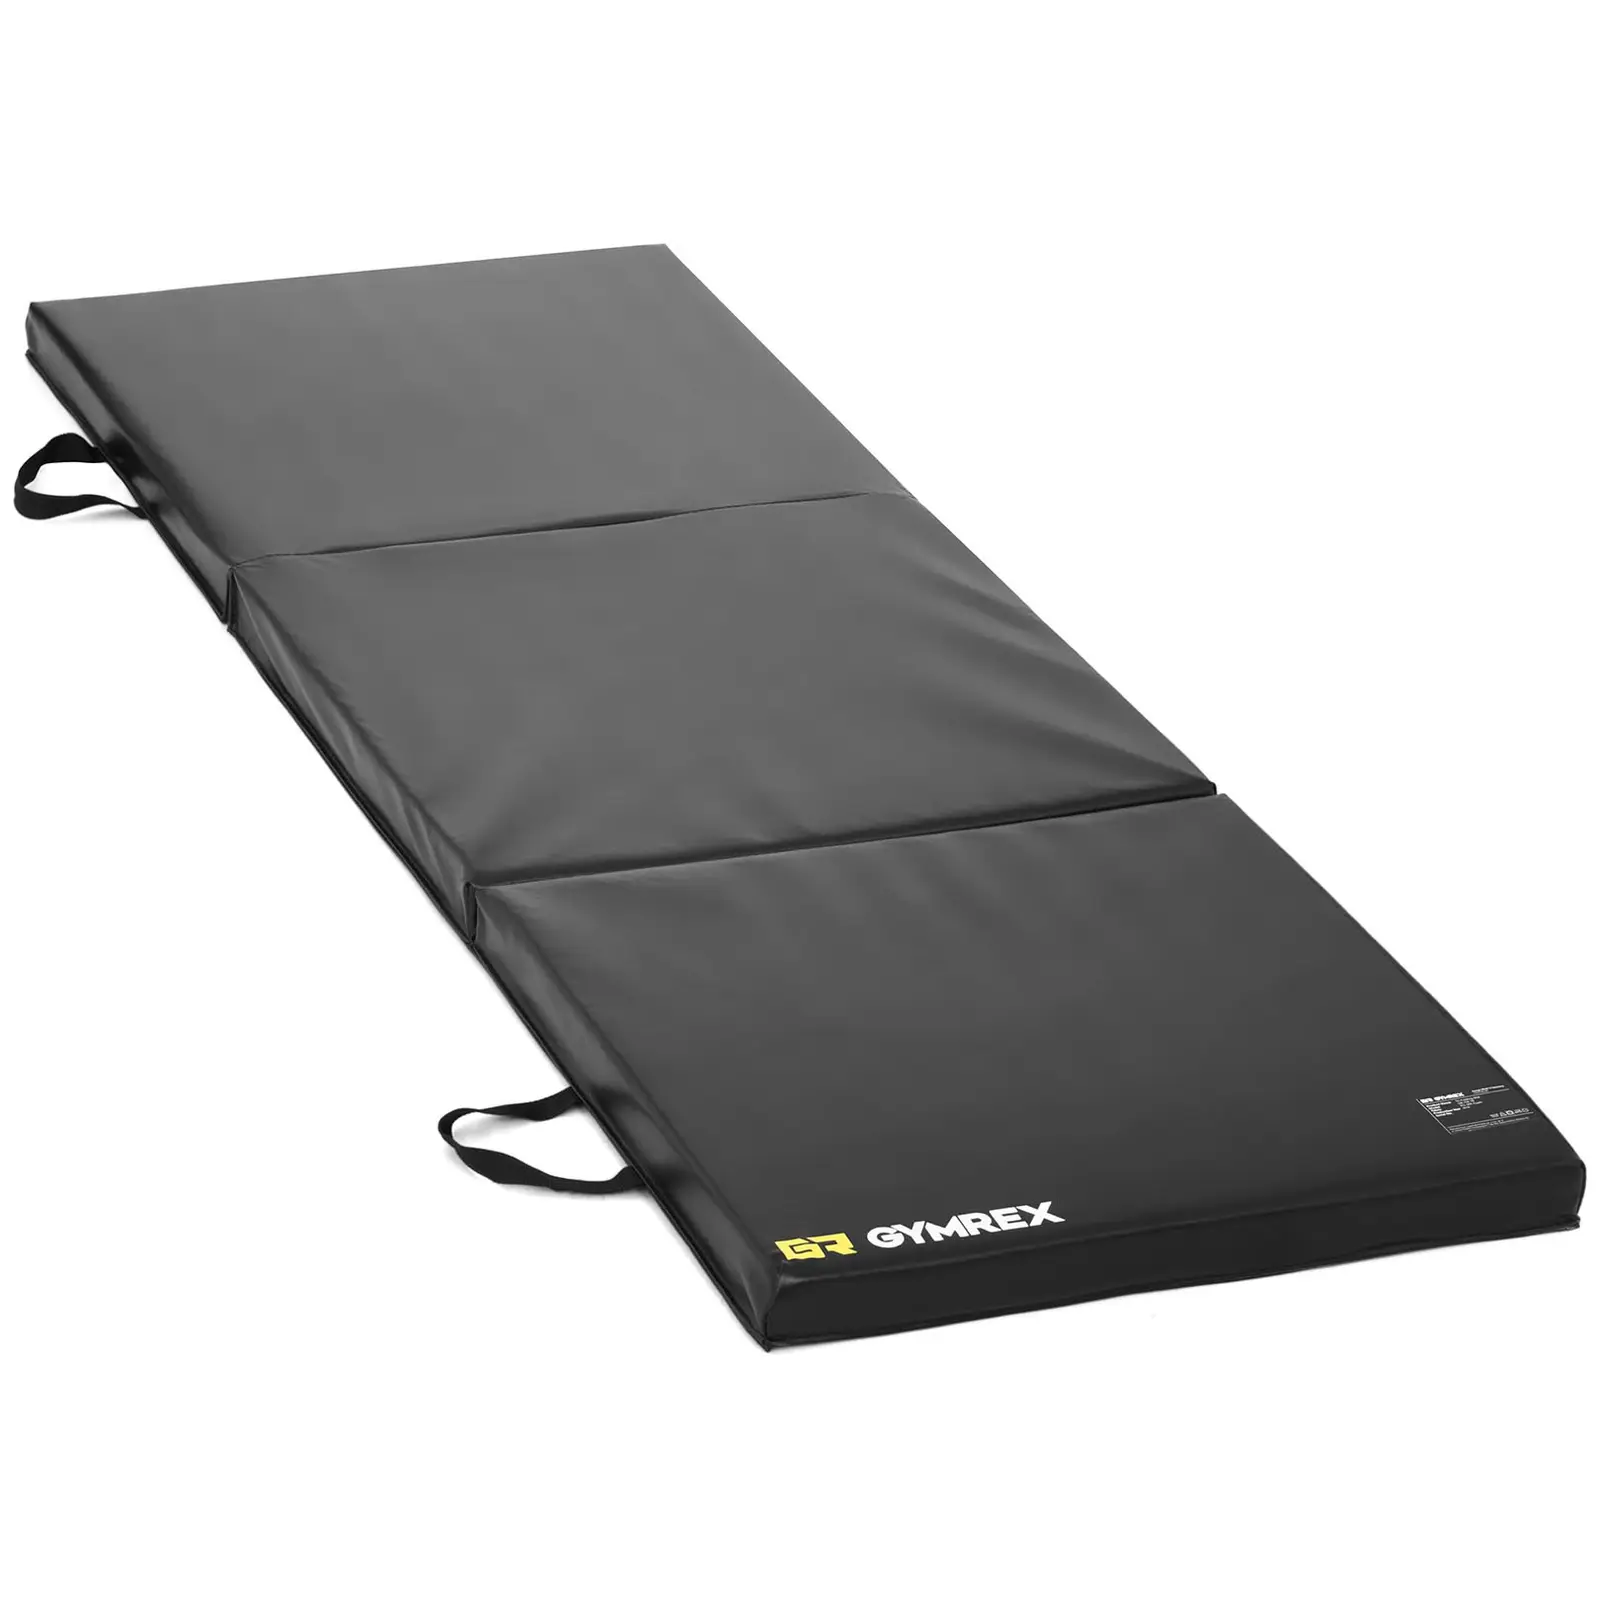 Hordozható fitnesz matrac - 180 x 60 x 5 cm - összehajtható - fekete